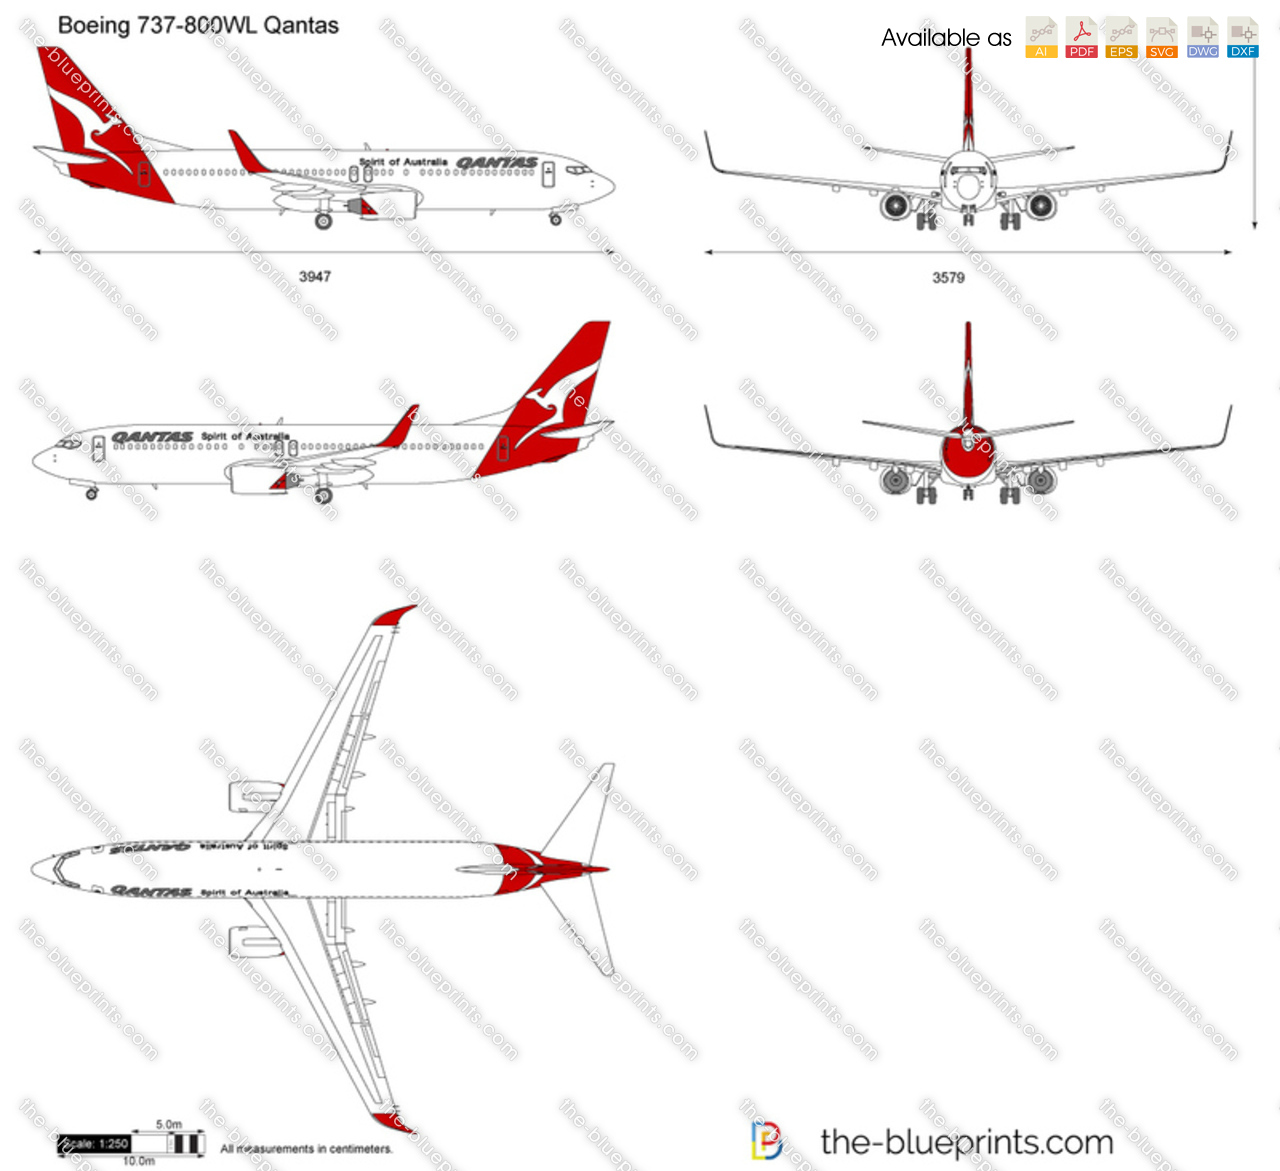 Boeing 737-800WL Qantas